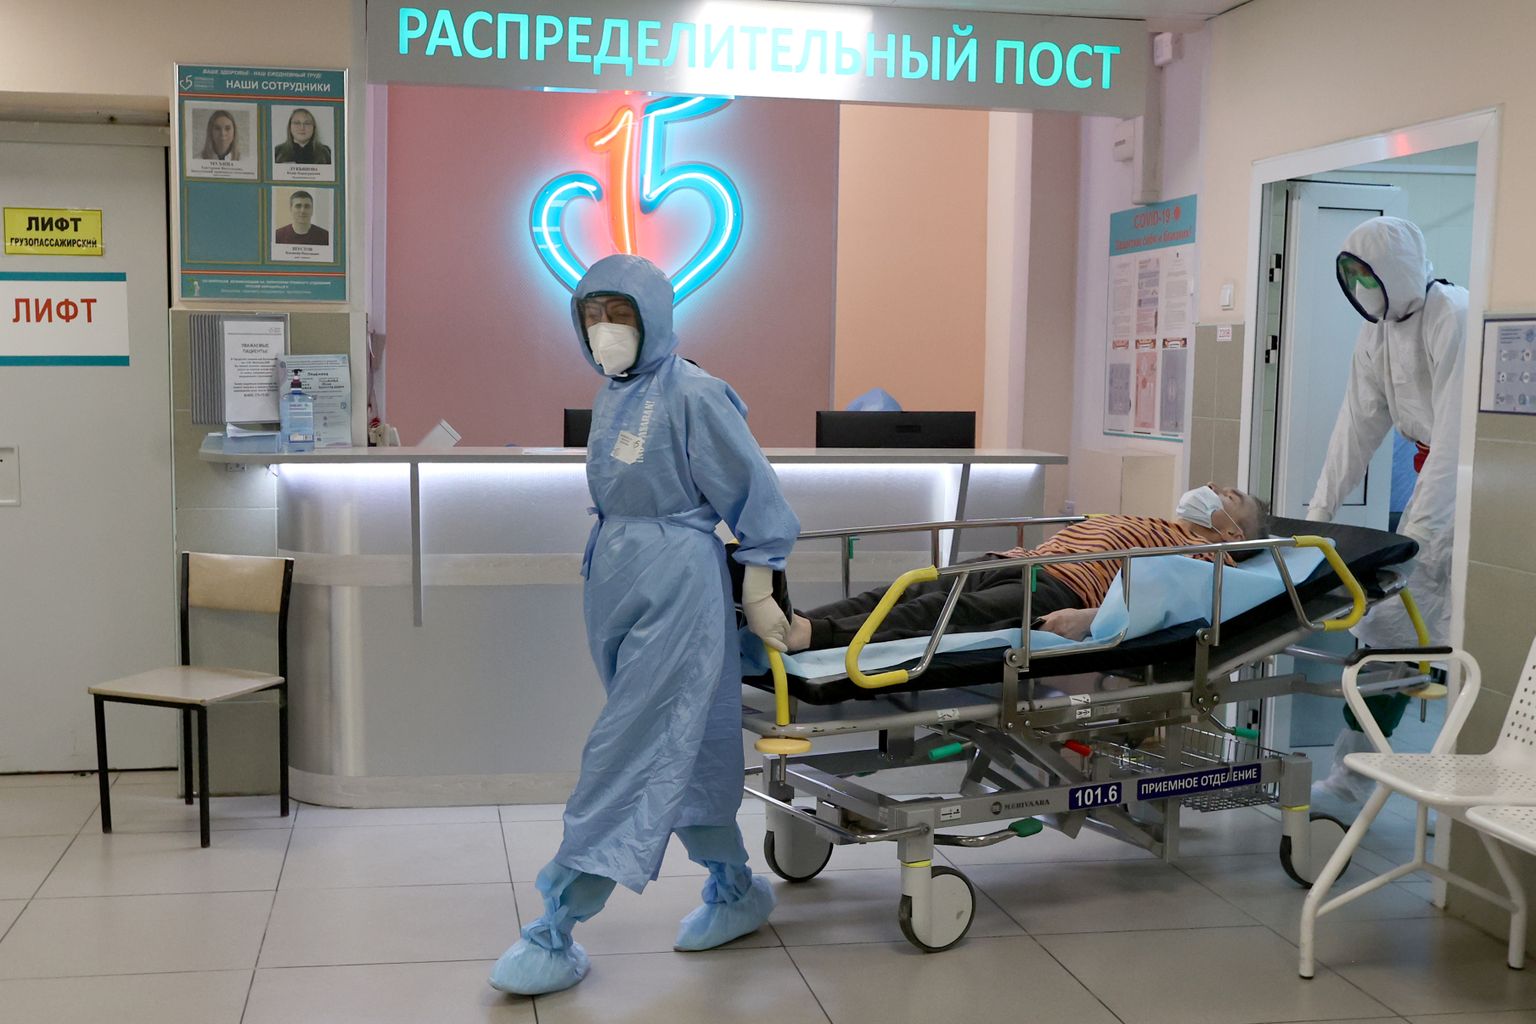 Пункт распределения коронапациентов в московской больнице.